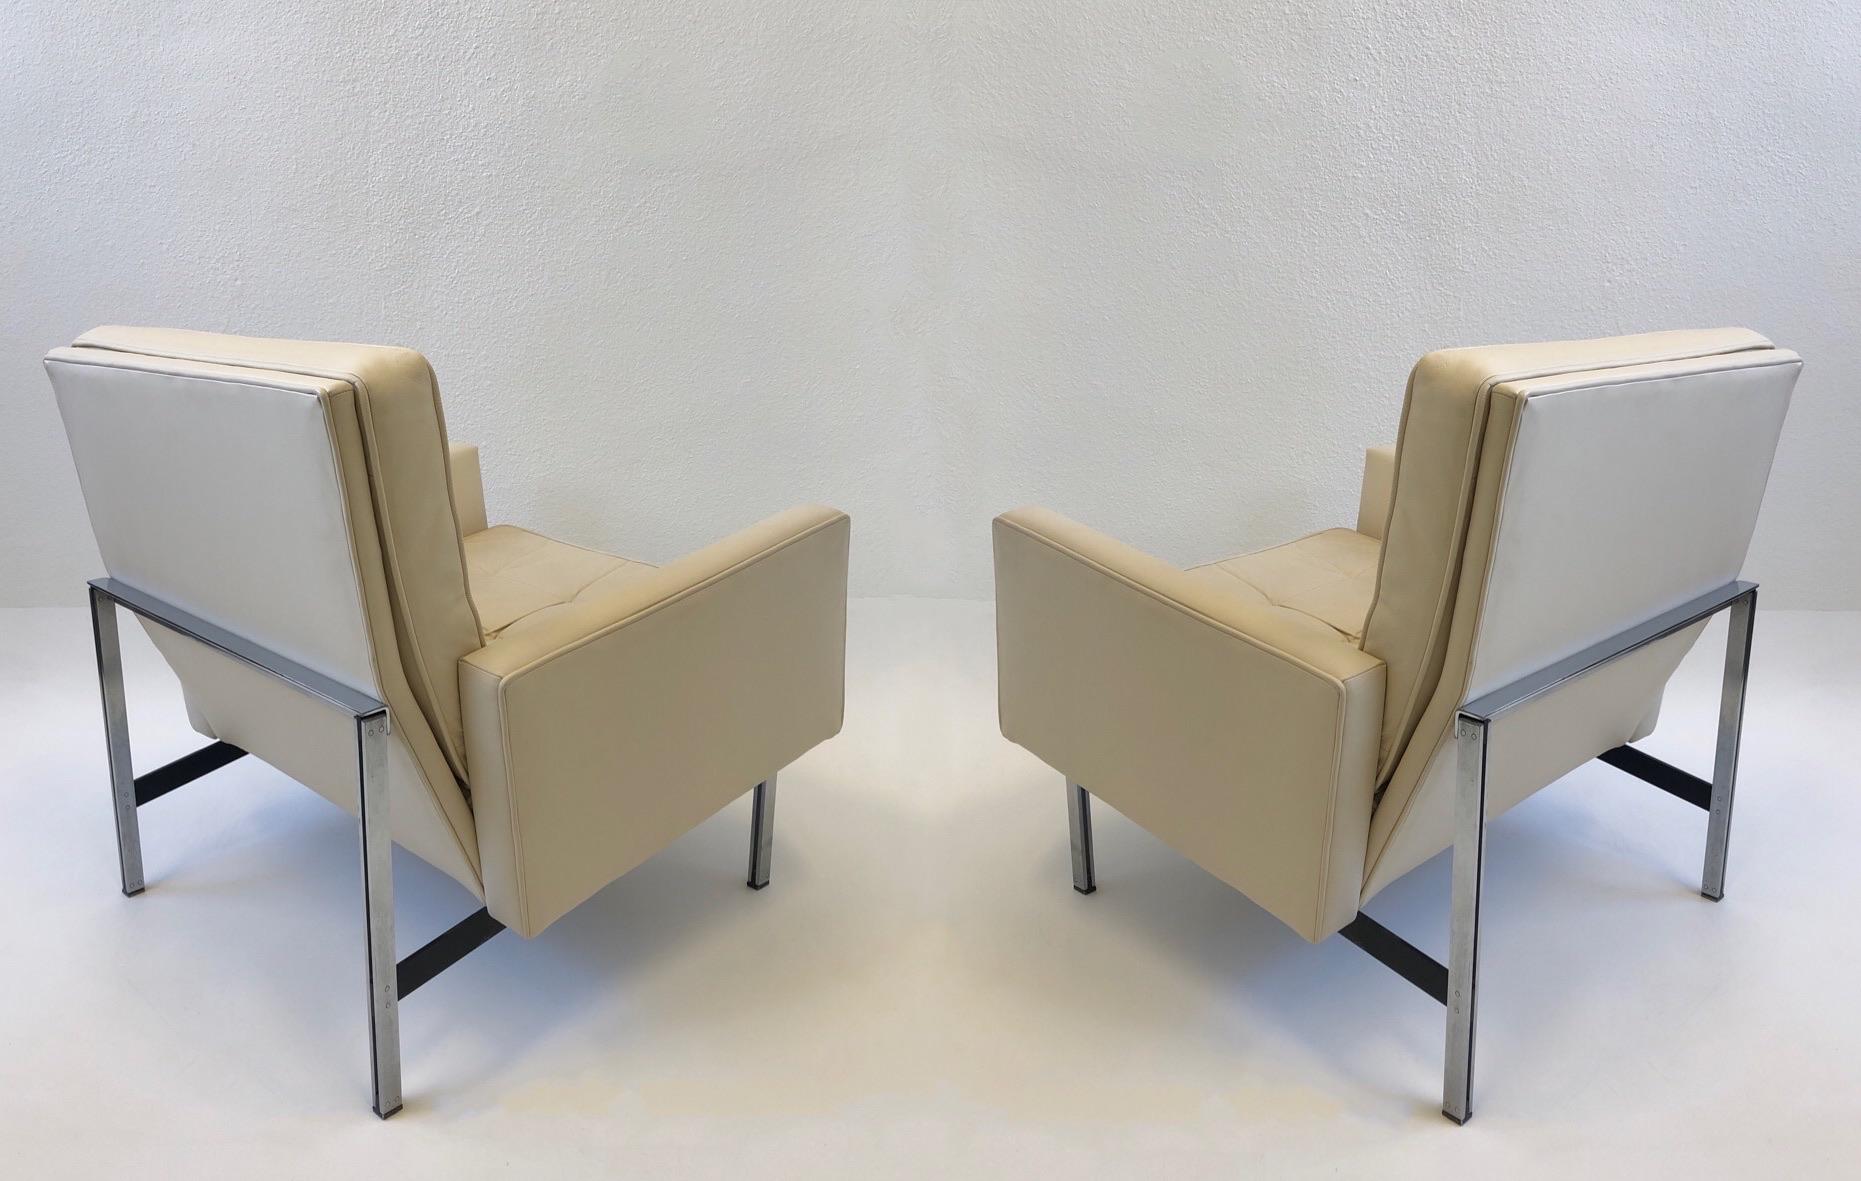 Magnifiques chaises de salon des années 1950 en cuir blanc cassé avec pieds en acier inoxydable à barres parallèles, conçues par Florence Knoll pour Knoll.
Cela vient de l'ambassade d'Australie.
Le canapé est également disponible.
Mesures : 30